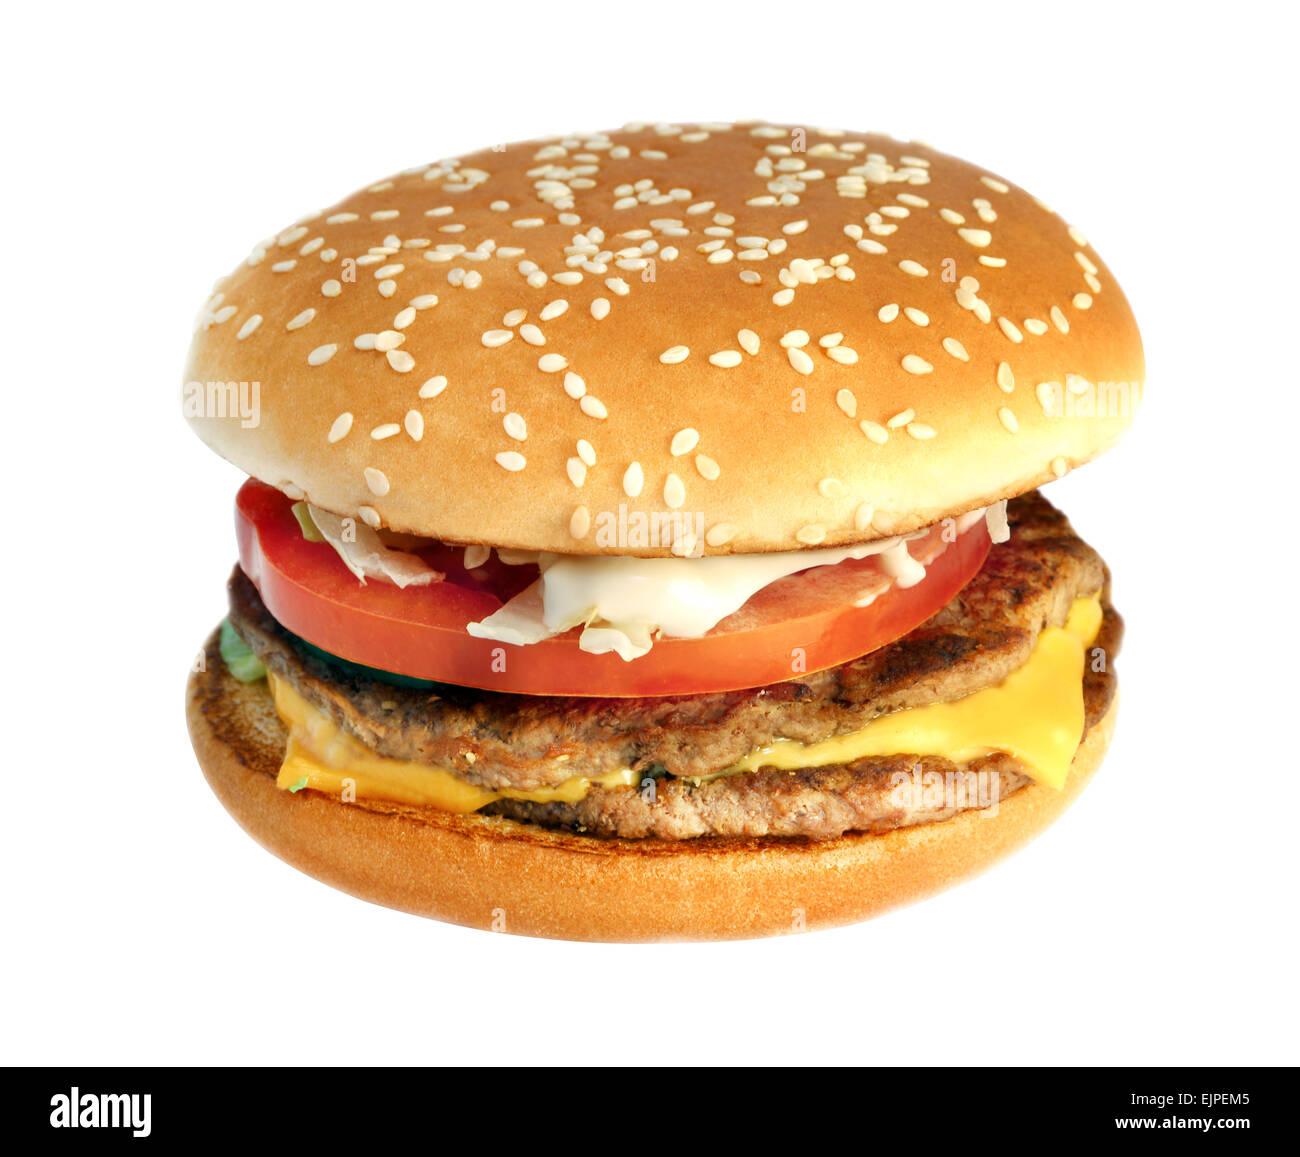 big tasty fresh burger isolated on a white background Stock Photo